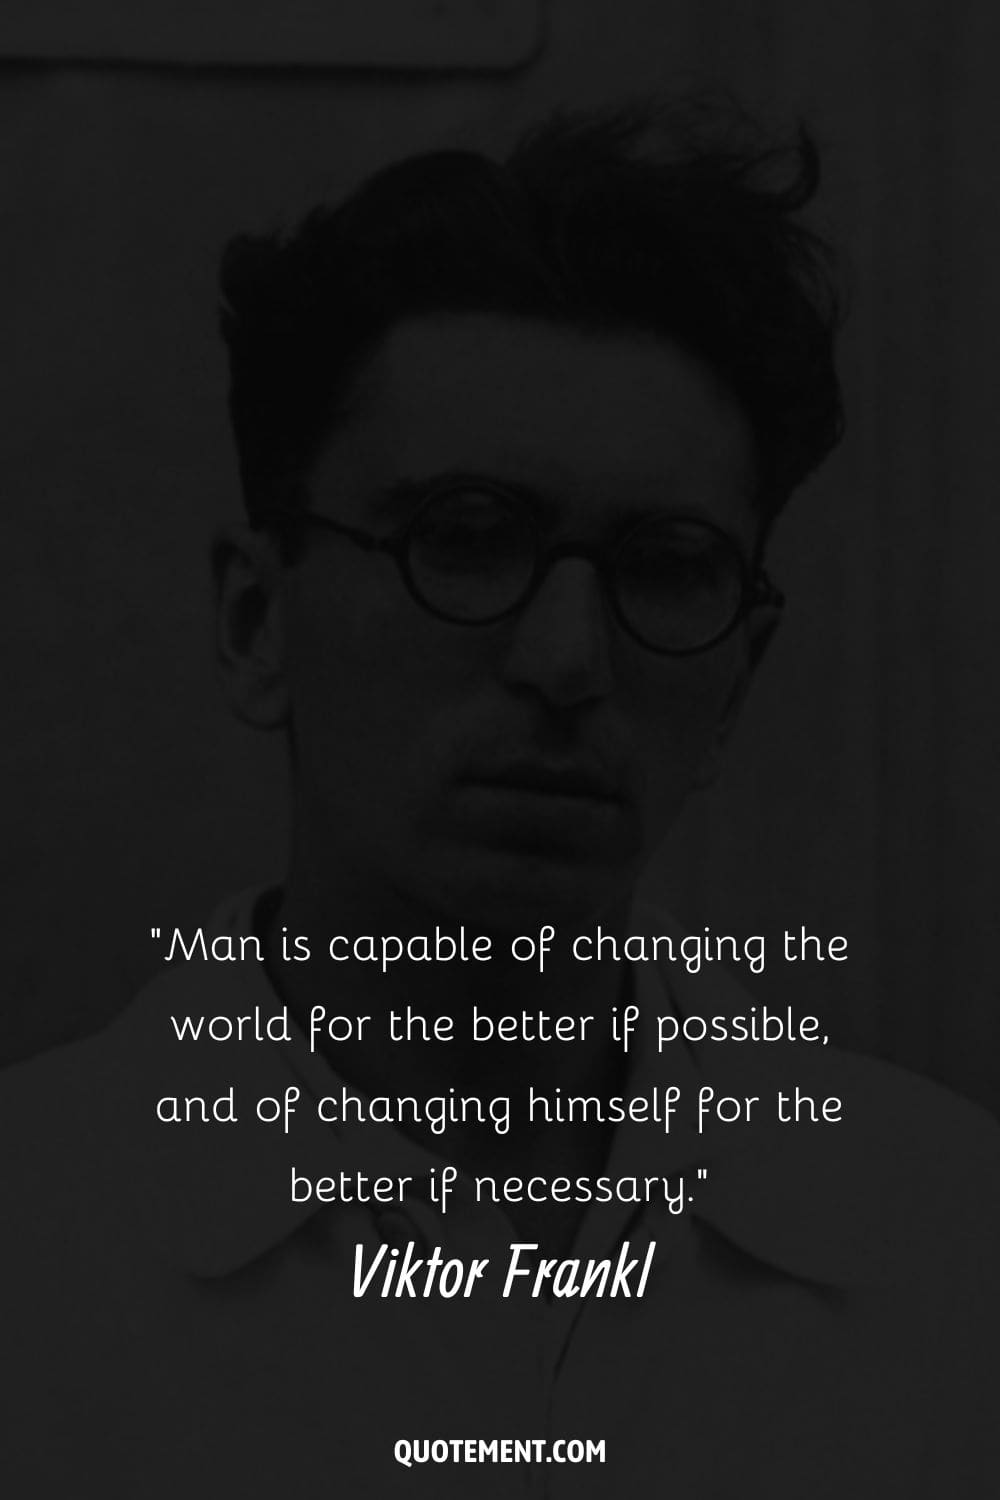 Imagen de Viktor Frankl posando con camisa blanca que representa su cita sobre el cambio.